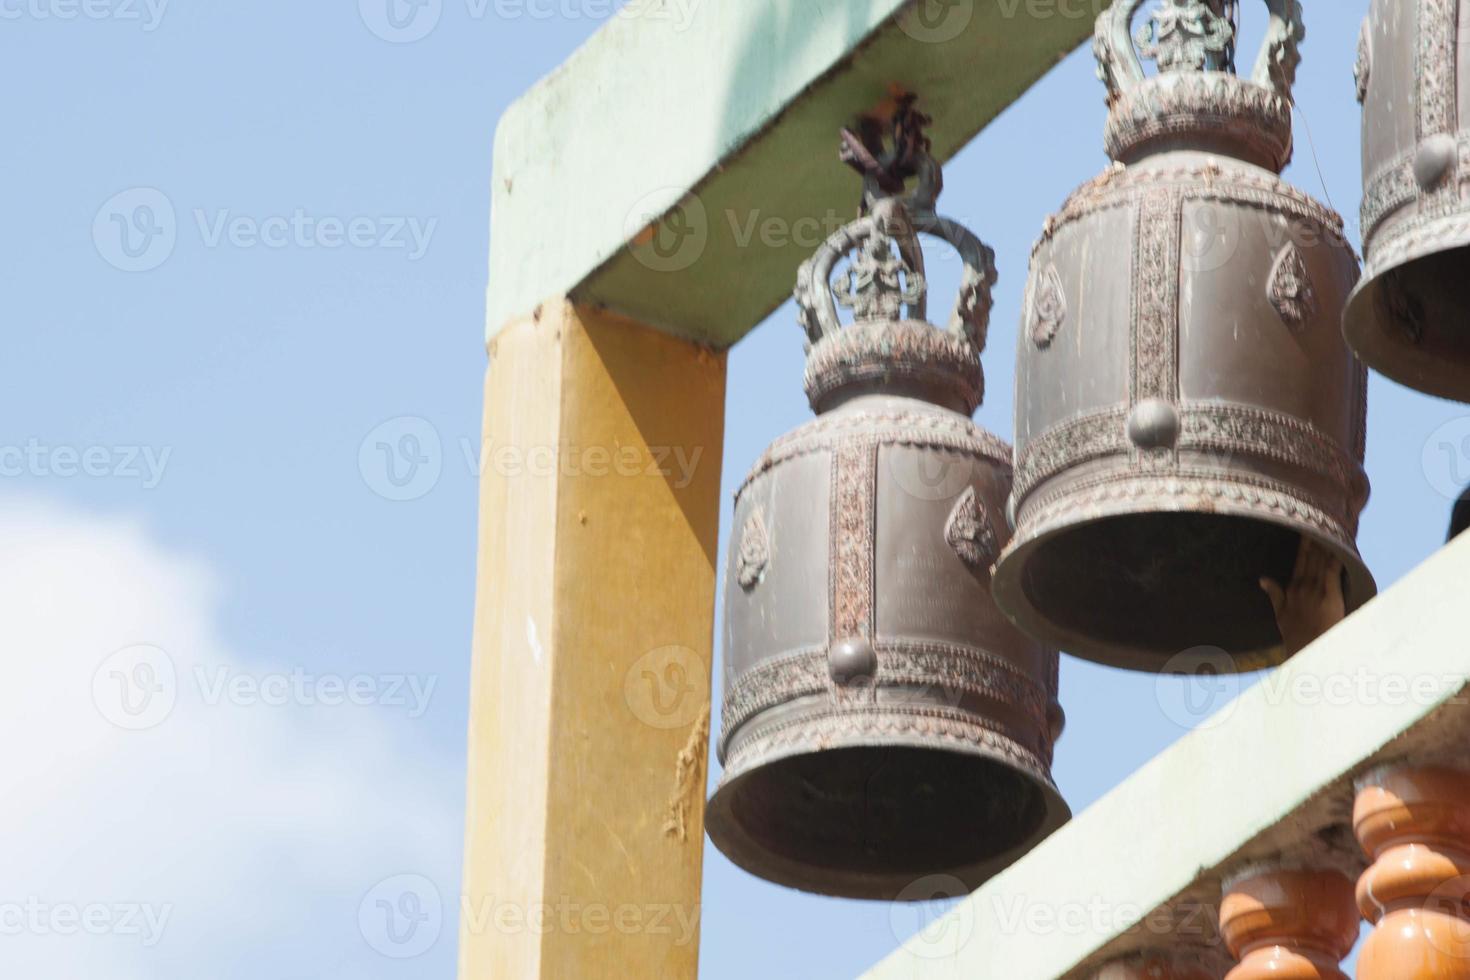 klockorna byggd på hög bergen tillverkad av mässing och de ljud av klockorna ringande genom hela de thai tempel kullar i lantlig thailand. foto